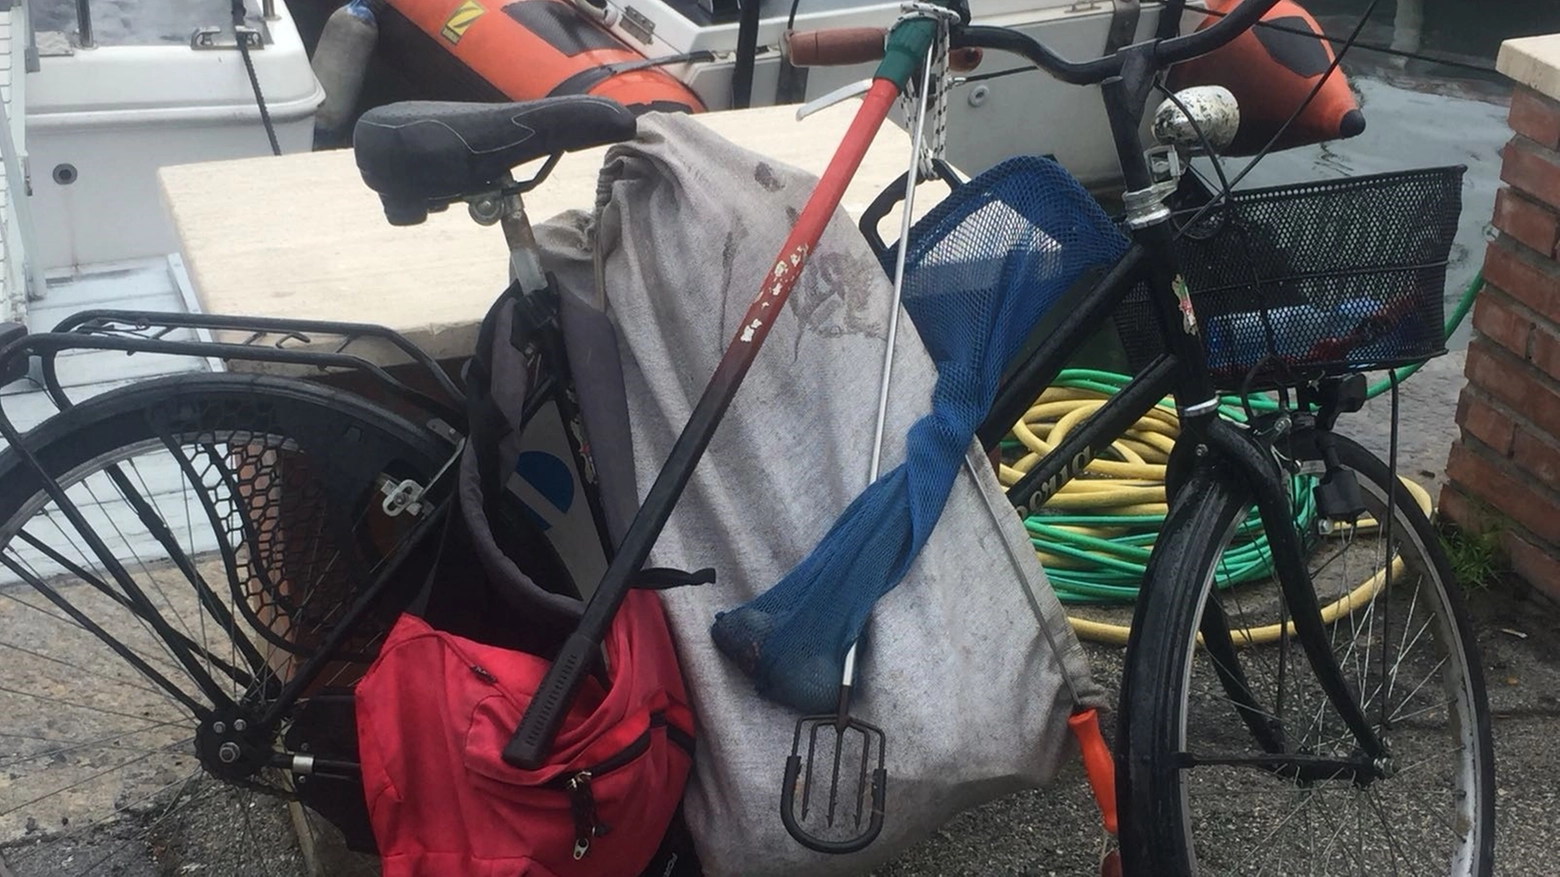 La bici e alcune sacche dove è stato trovato il cellulare del colpevole